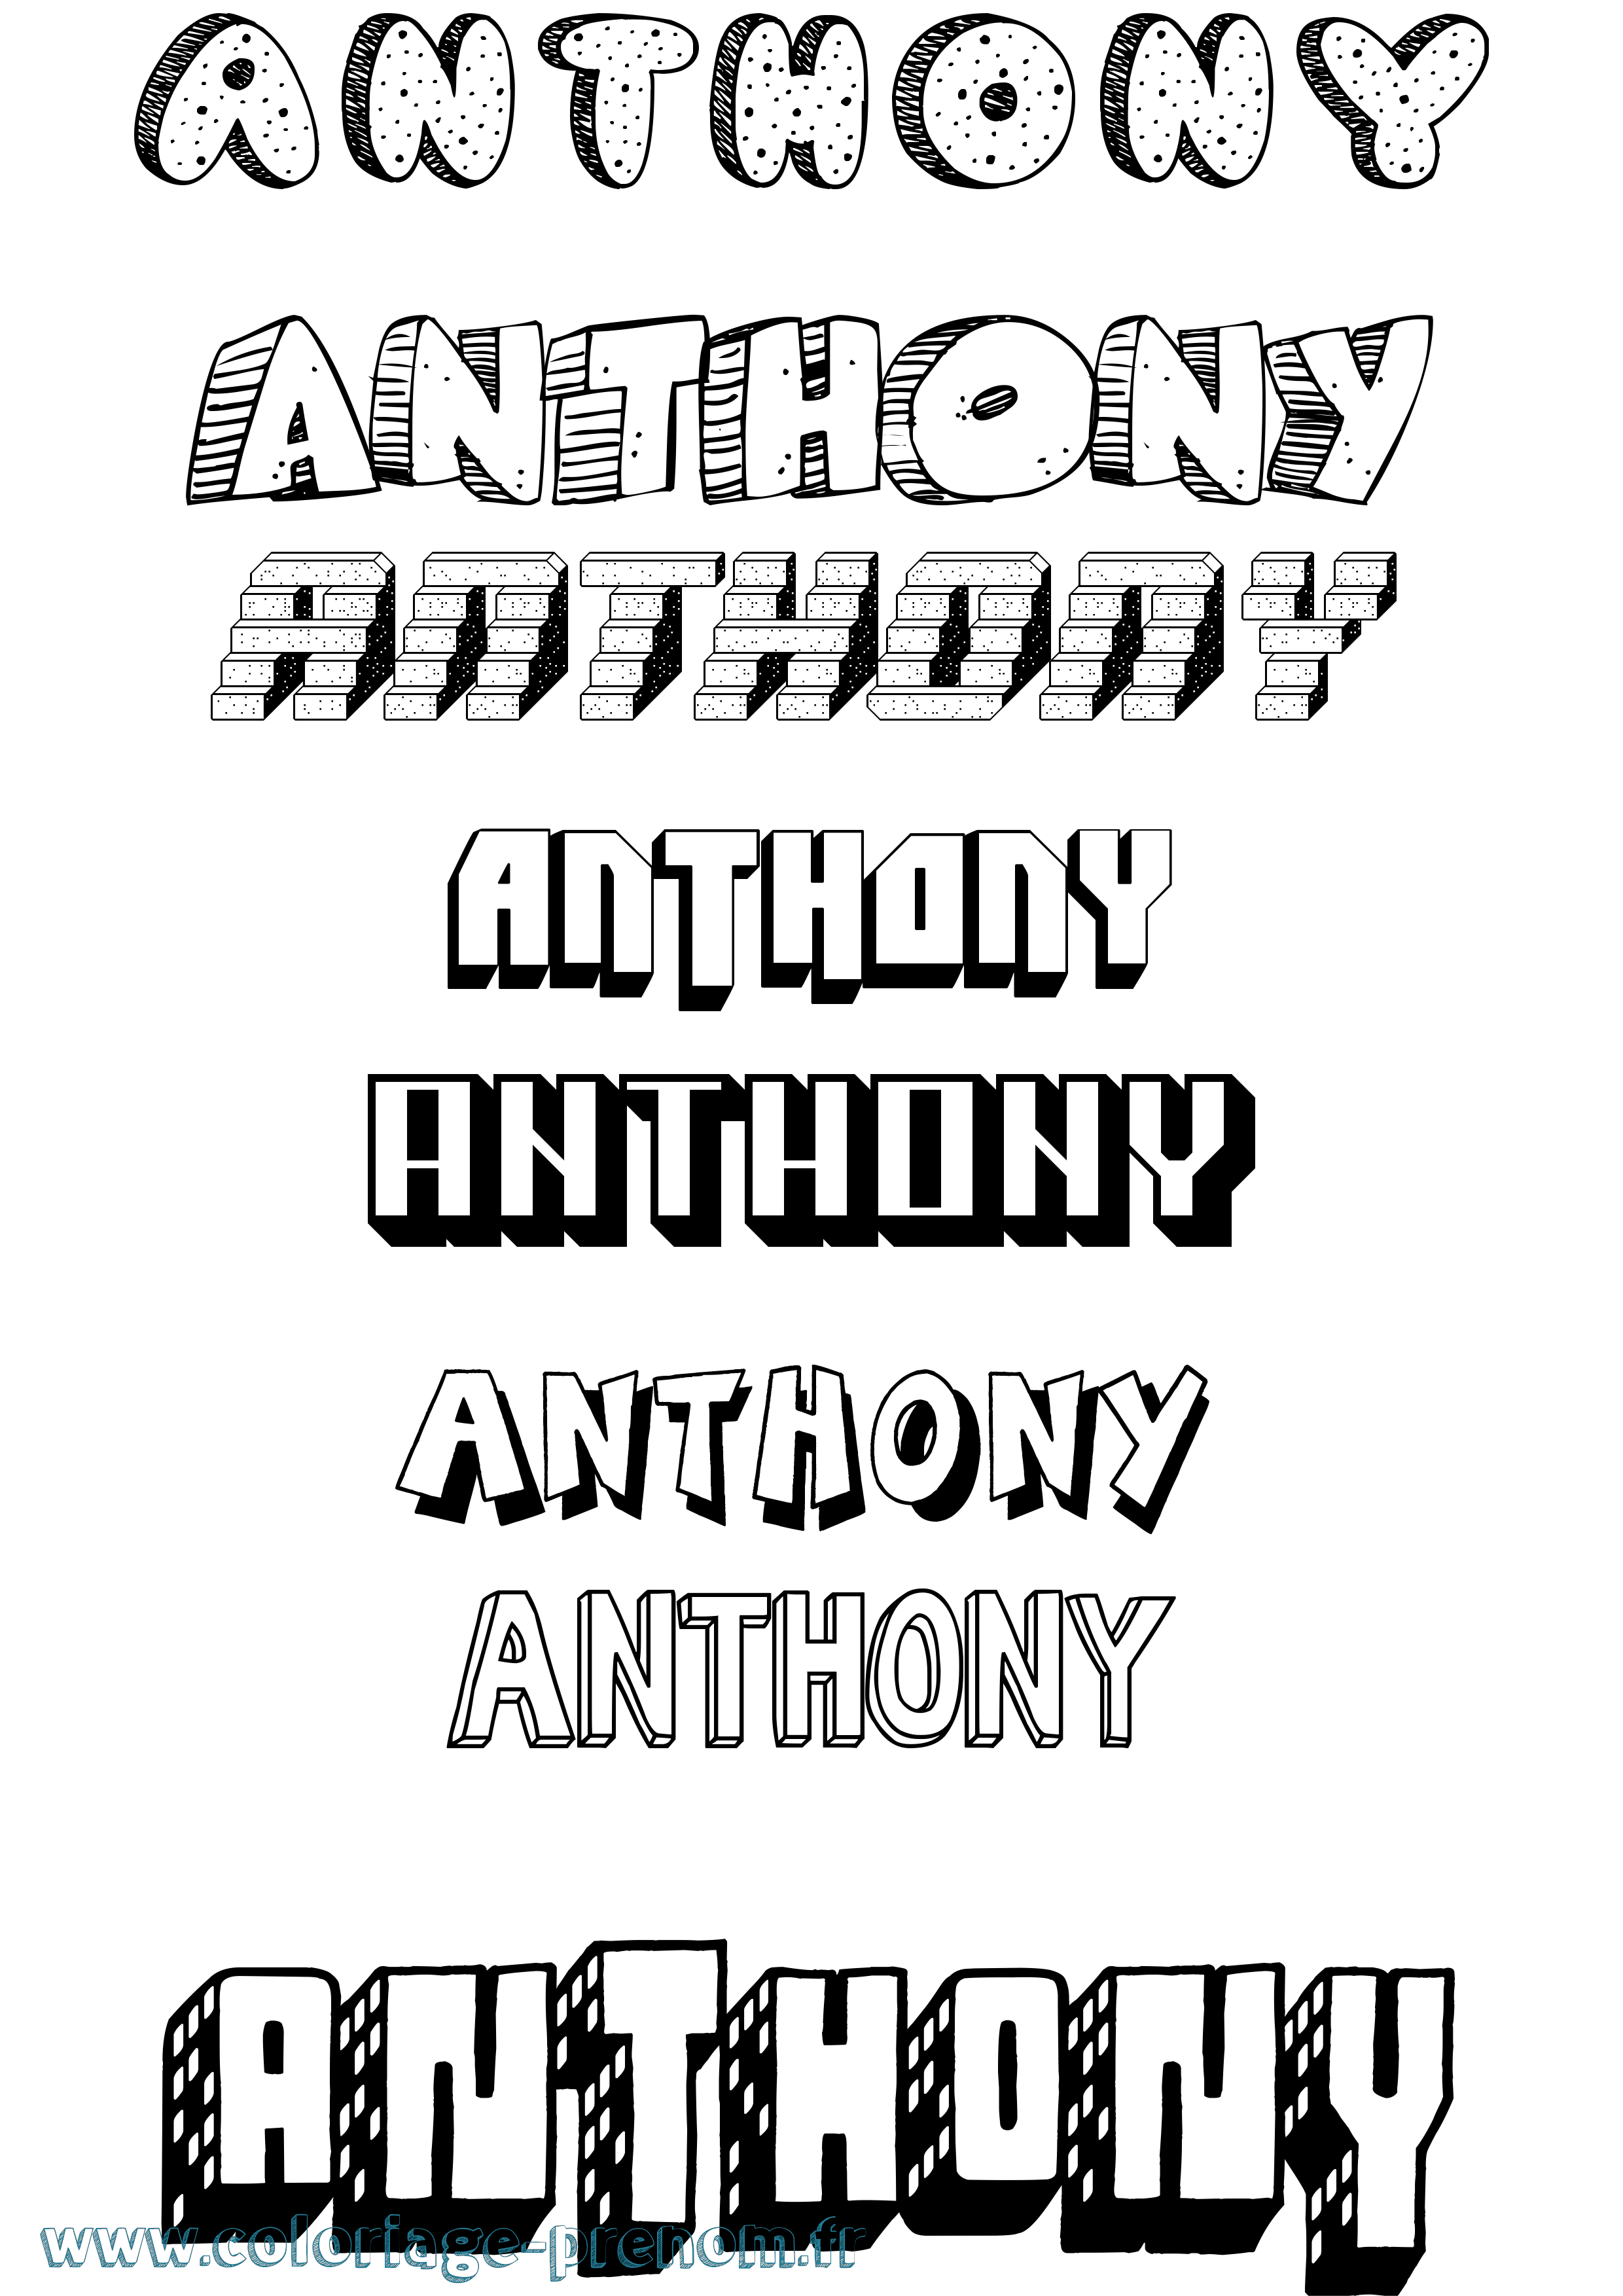 Coloriage prénom Anthony